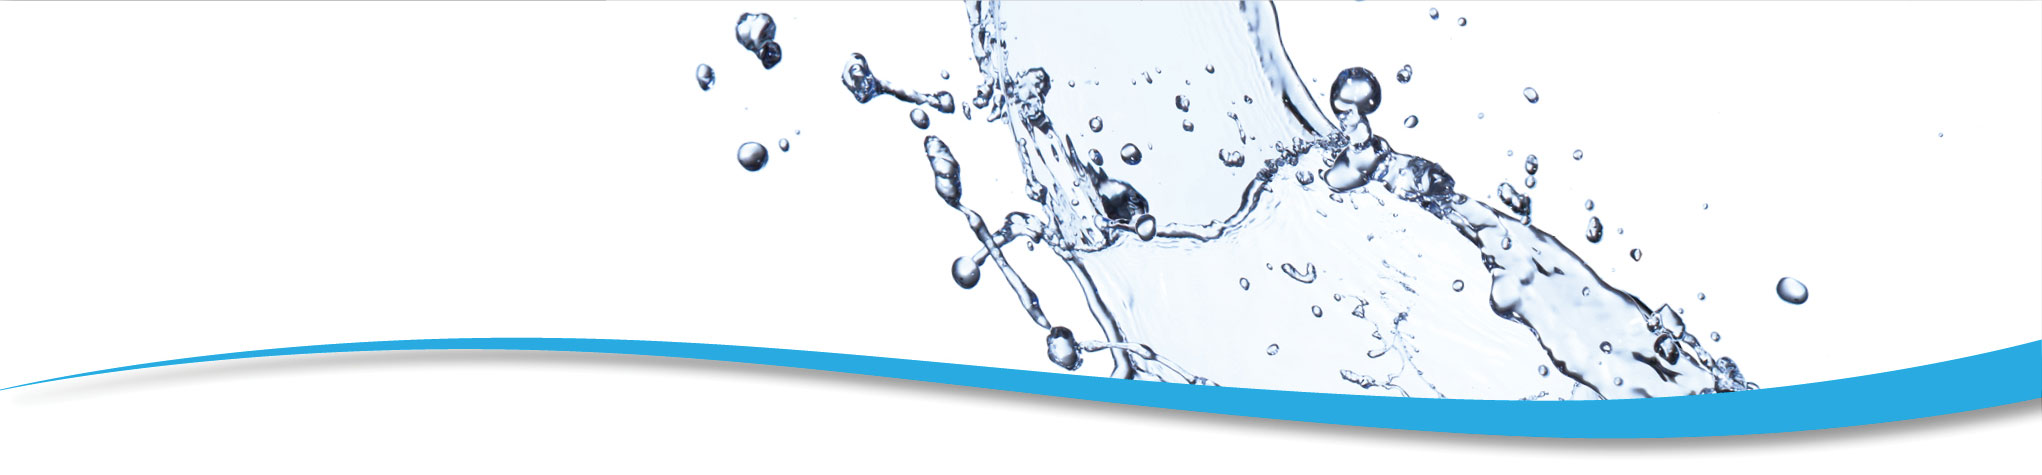 Wir liefern „Ideale Wasserqualität“